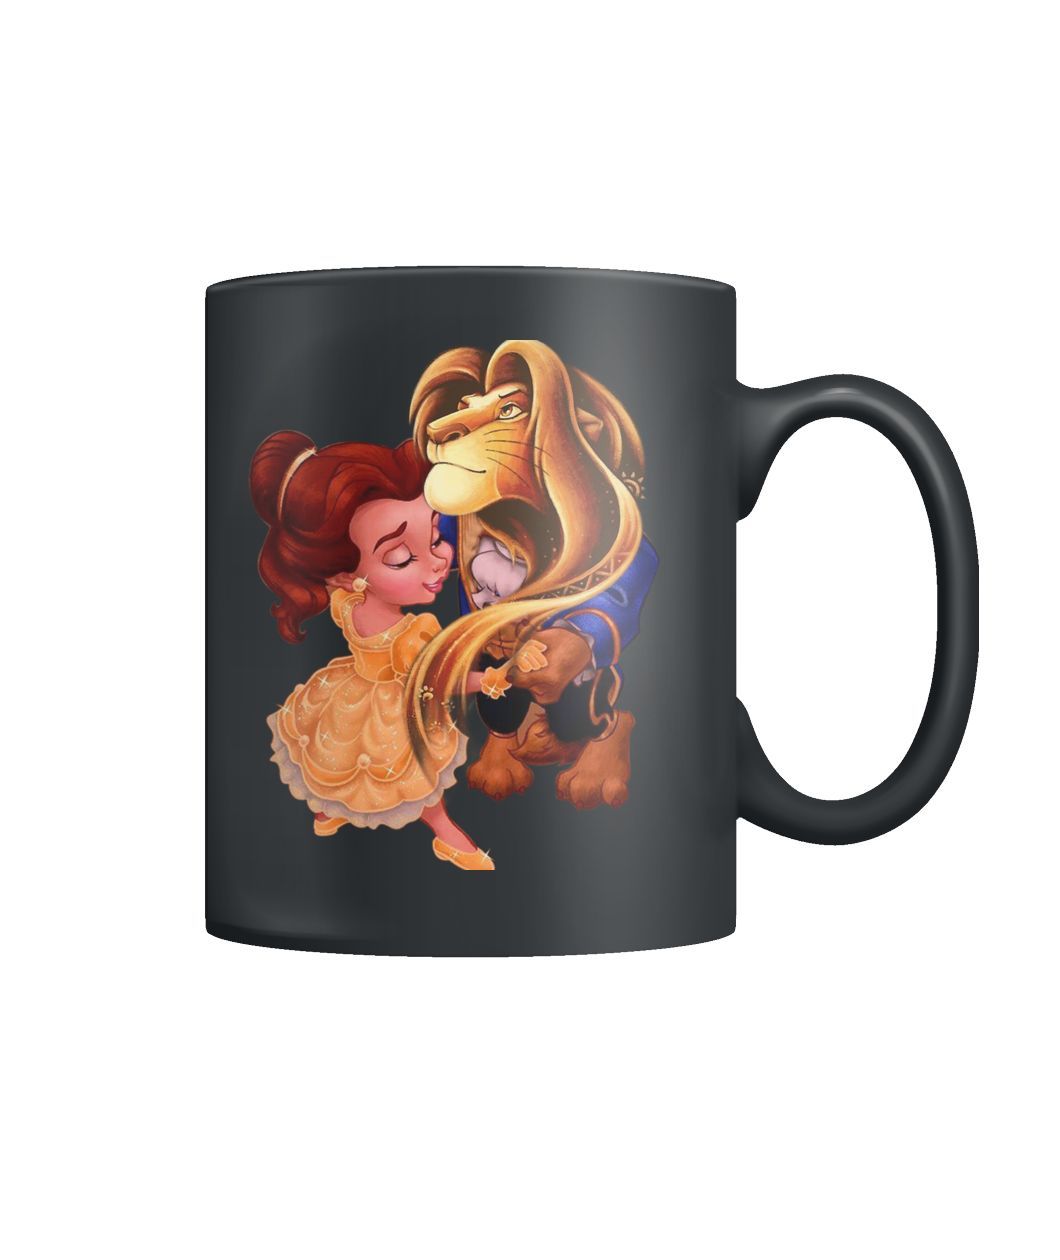 Beauty And The Beast Mug Valentine Gifts Color Coffee Mug